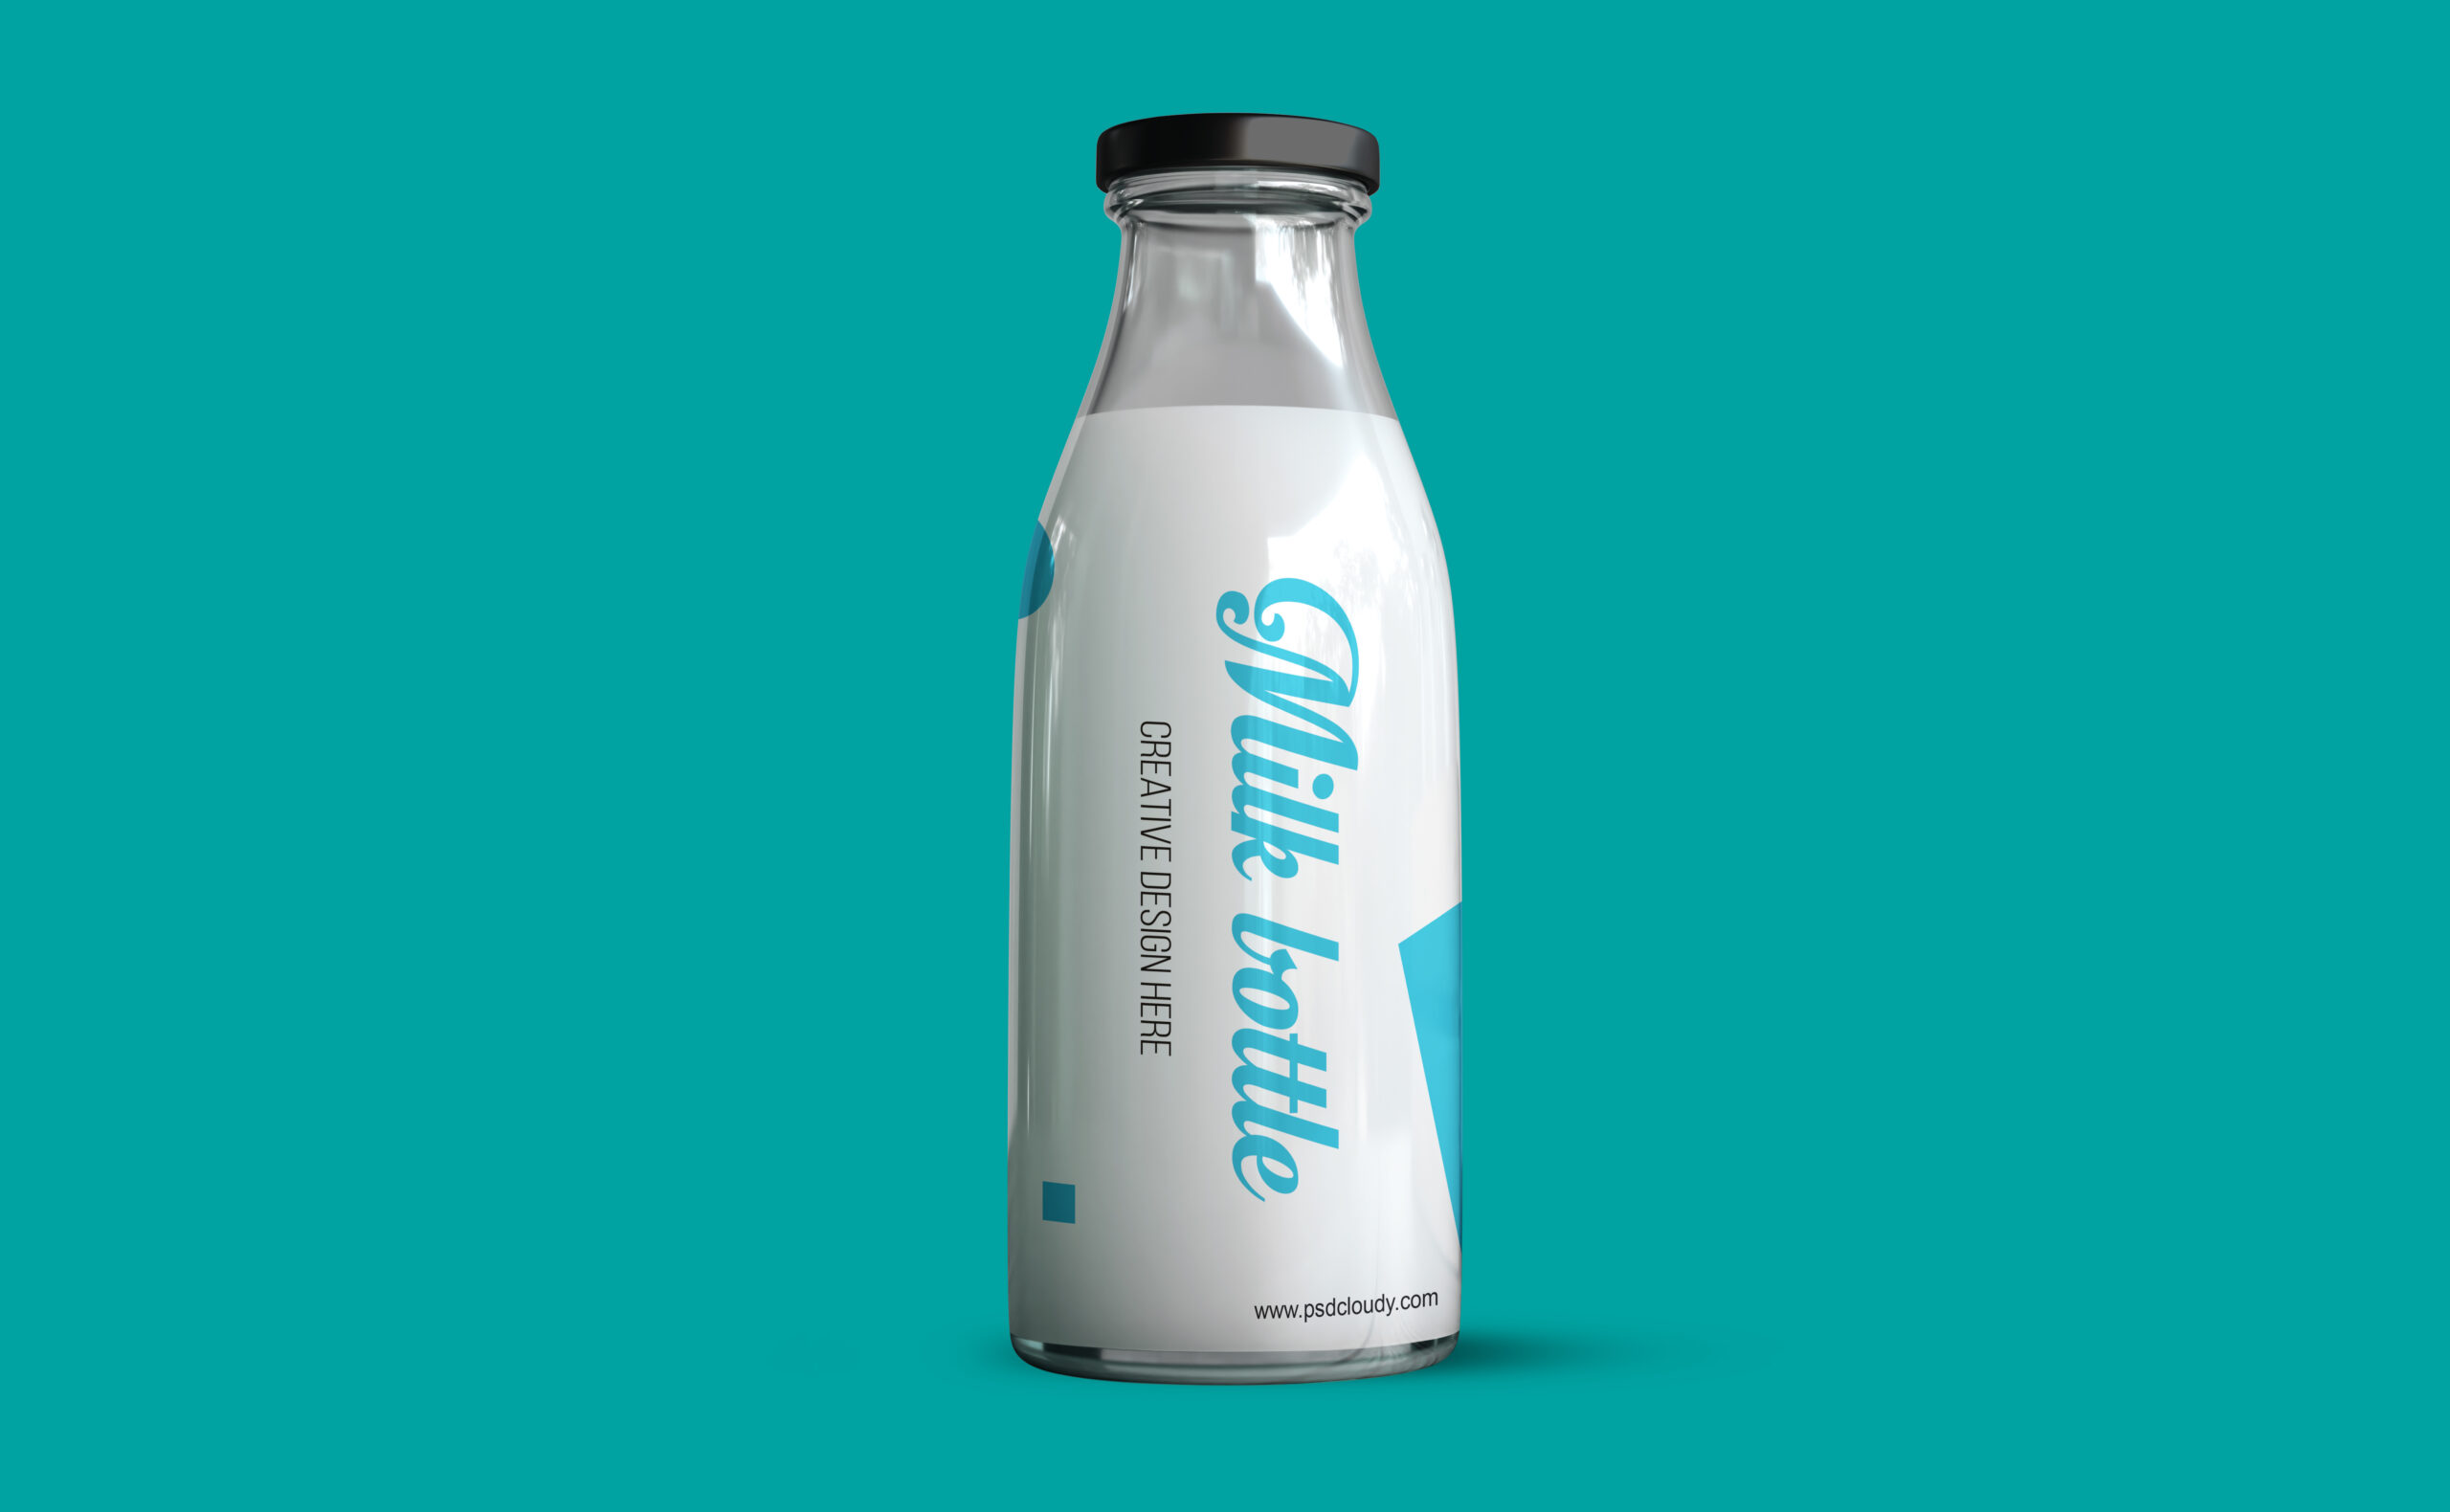 Milk Bottle Mockup Design PSD Free Download